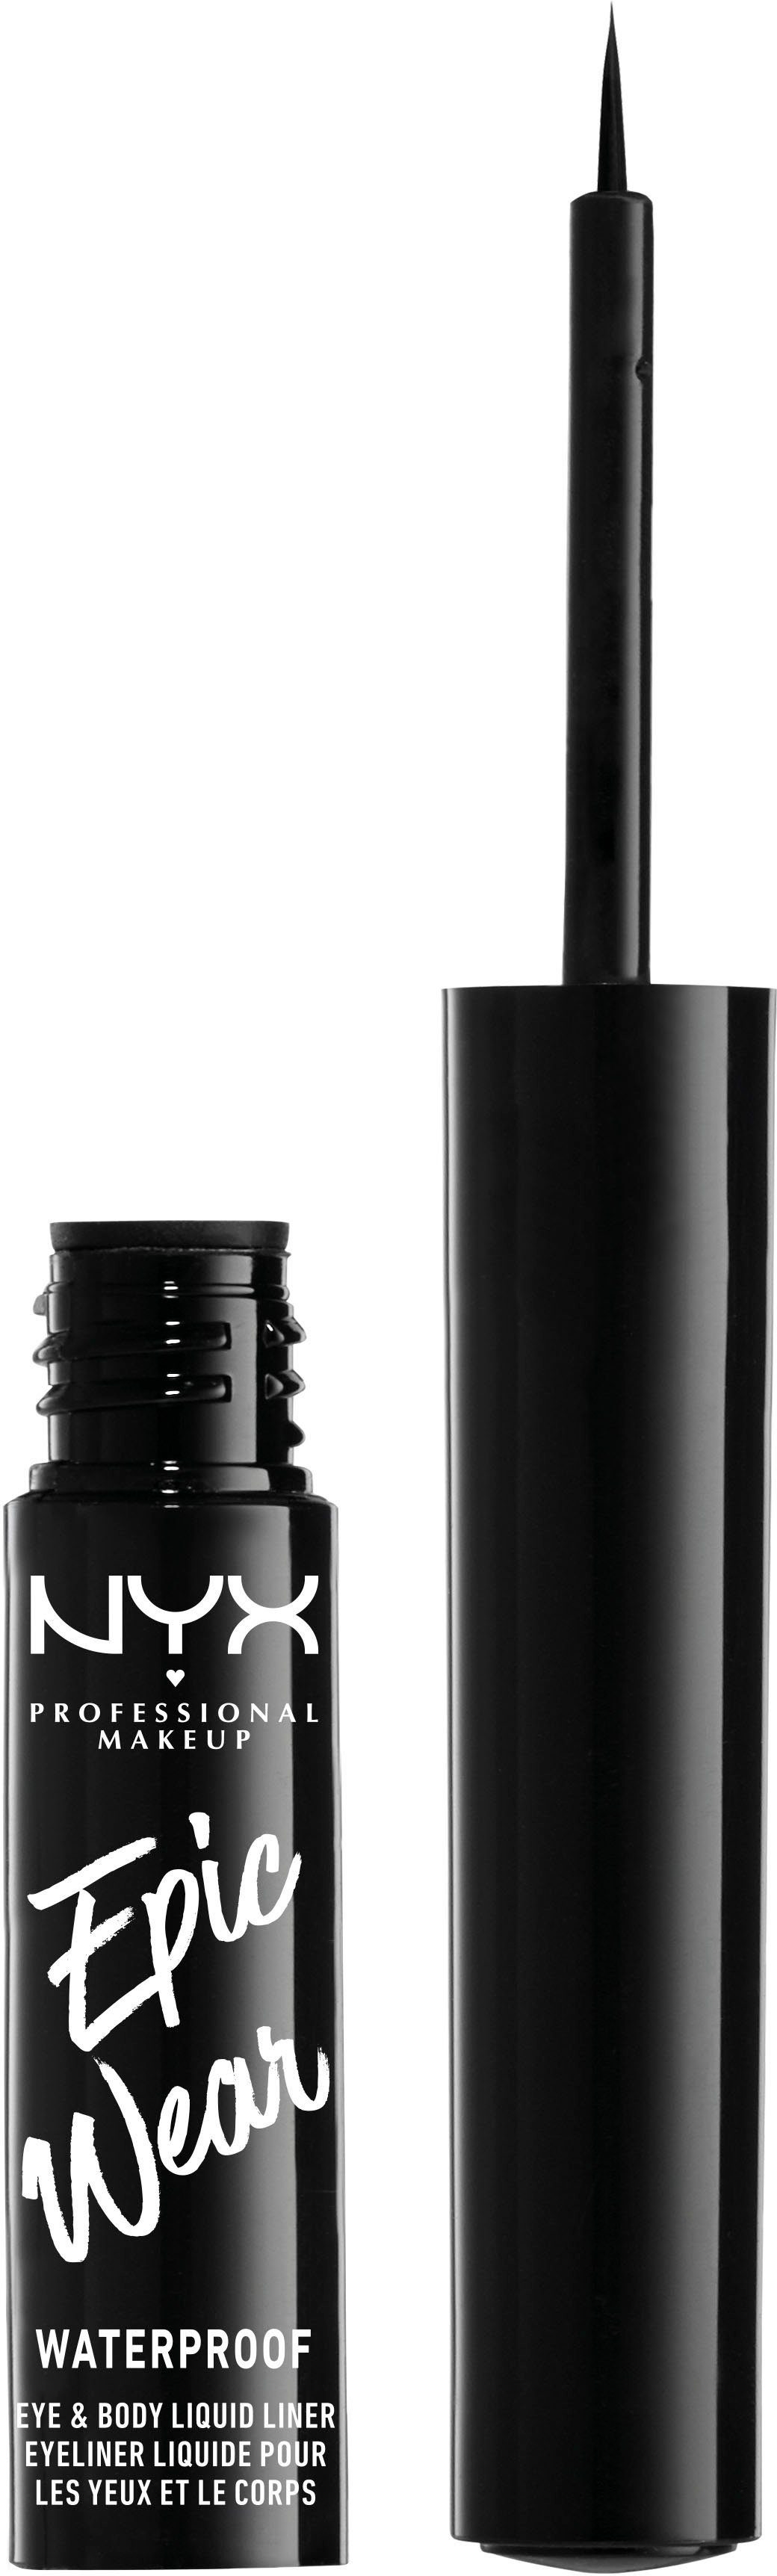 NYX Eyeliner Professional 01 Black Liquid Liner, Waterproof Wear Makeup Epic